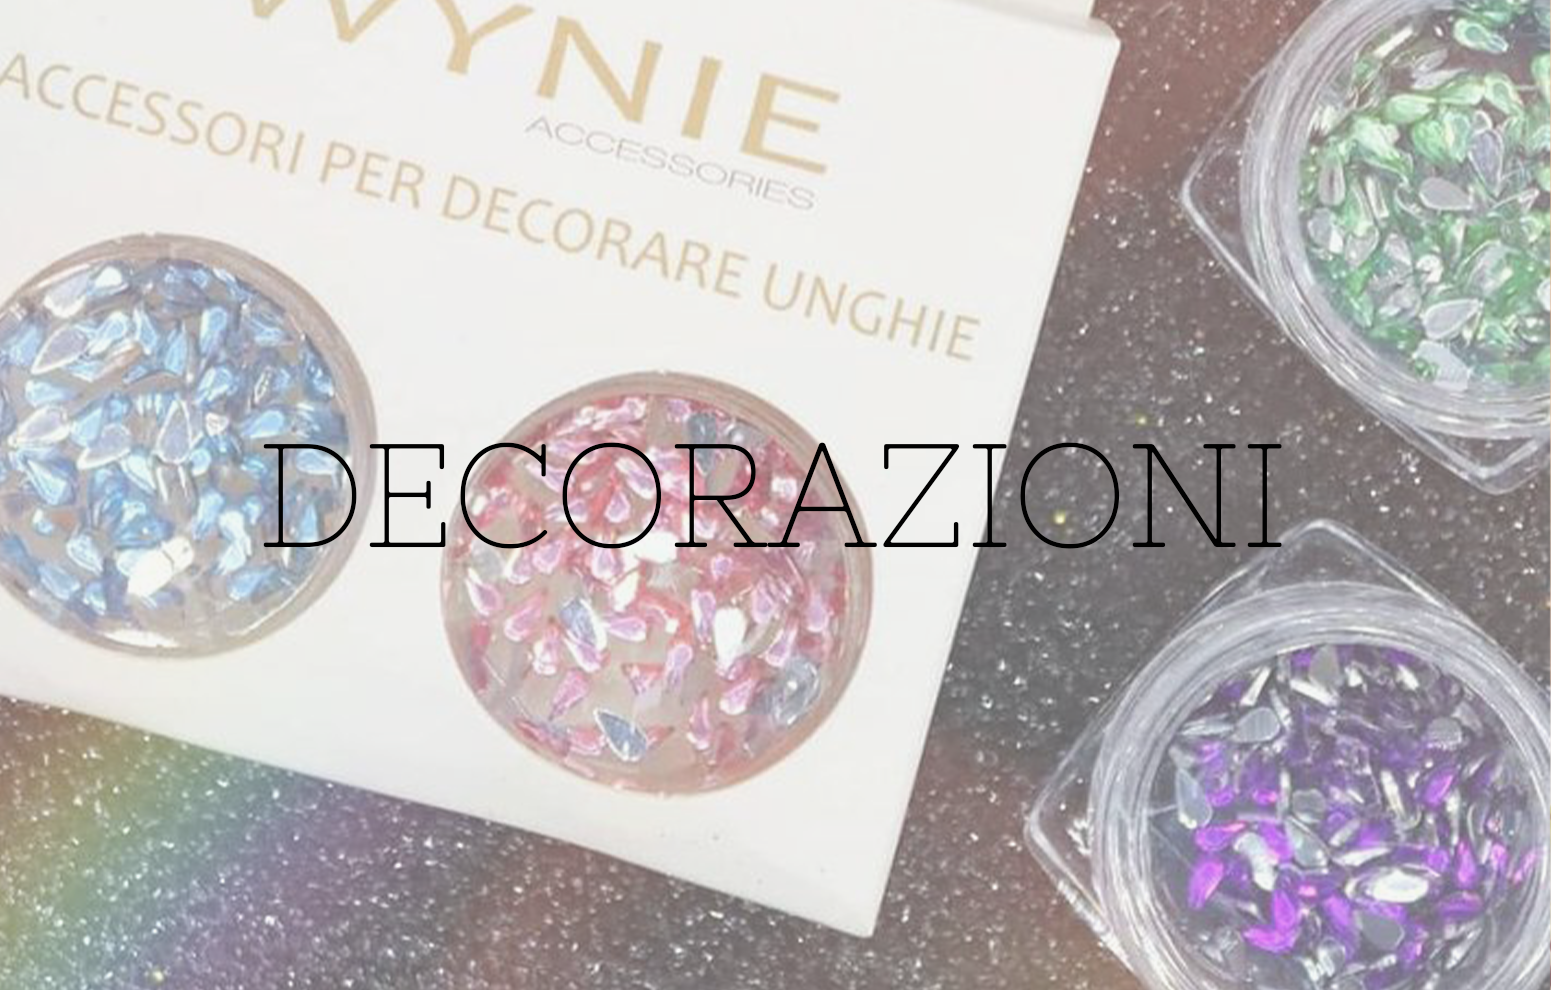 Decorazioni - Wynie Cosmetics Italia